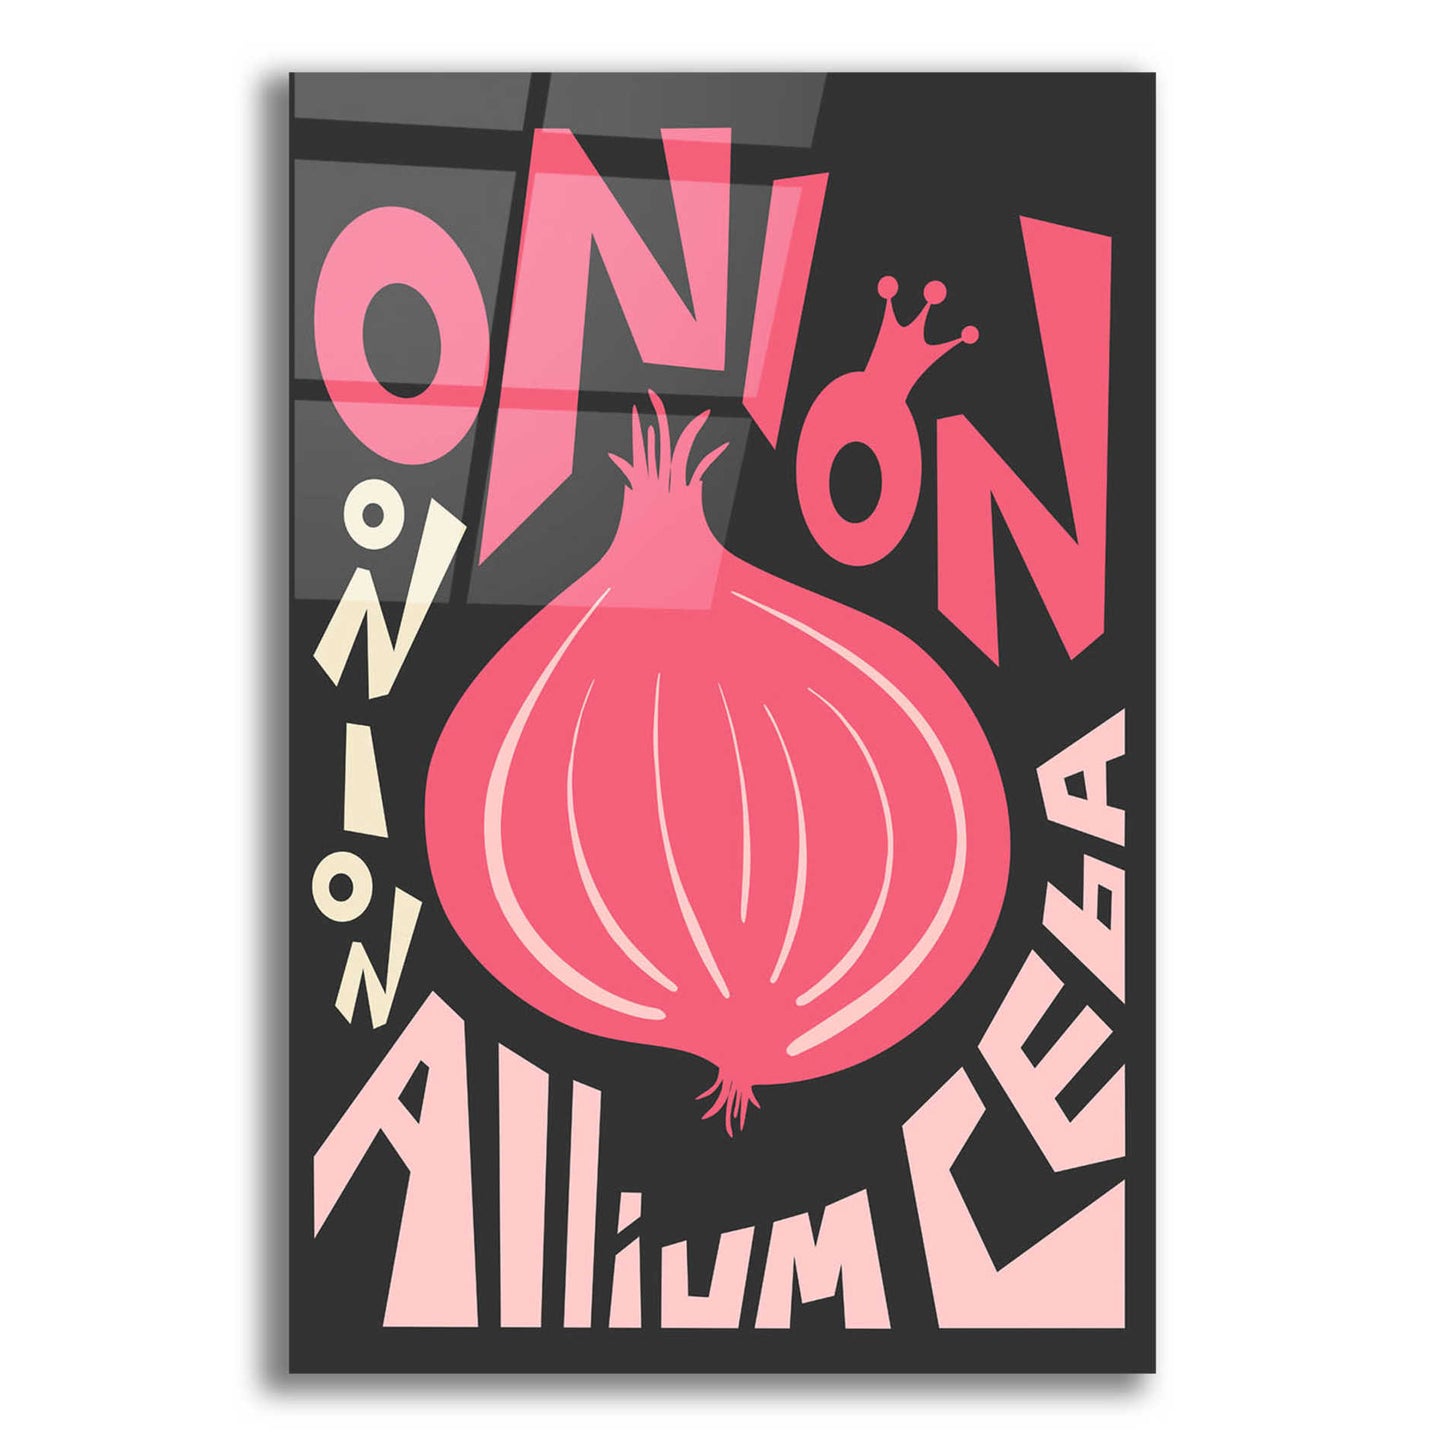 Epic Art 'Kitchen Onion' by Ayse, Acrylic Glass Wall Art,12x16